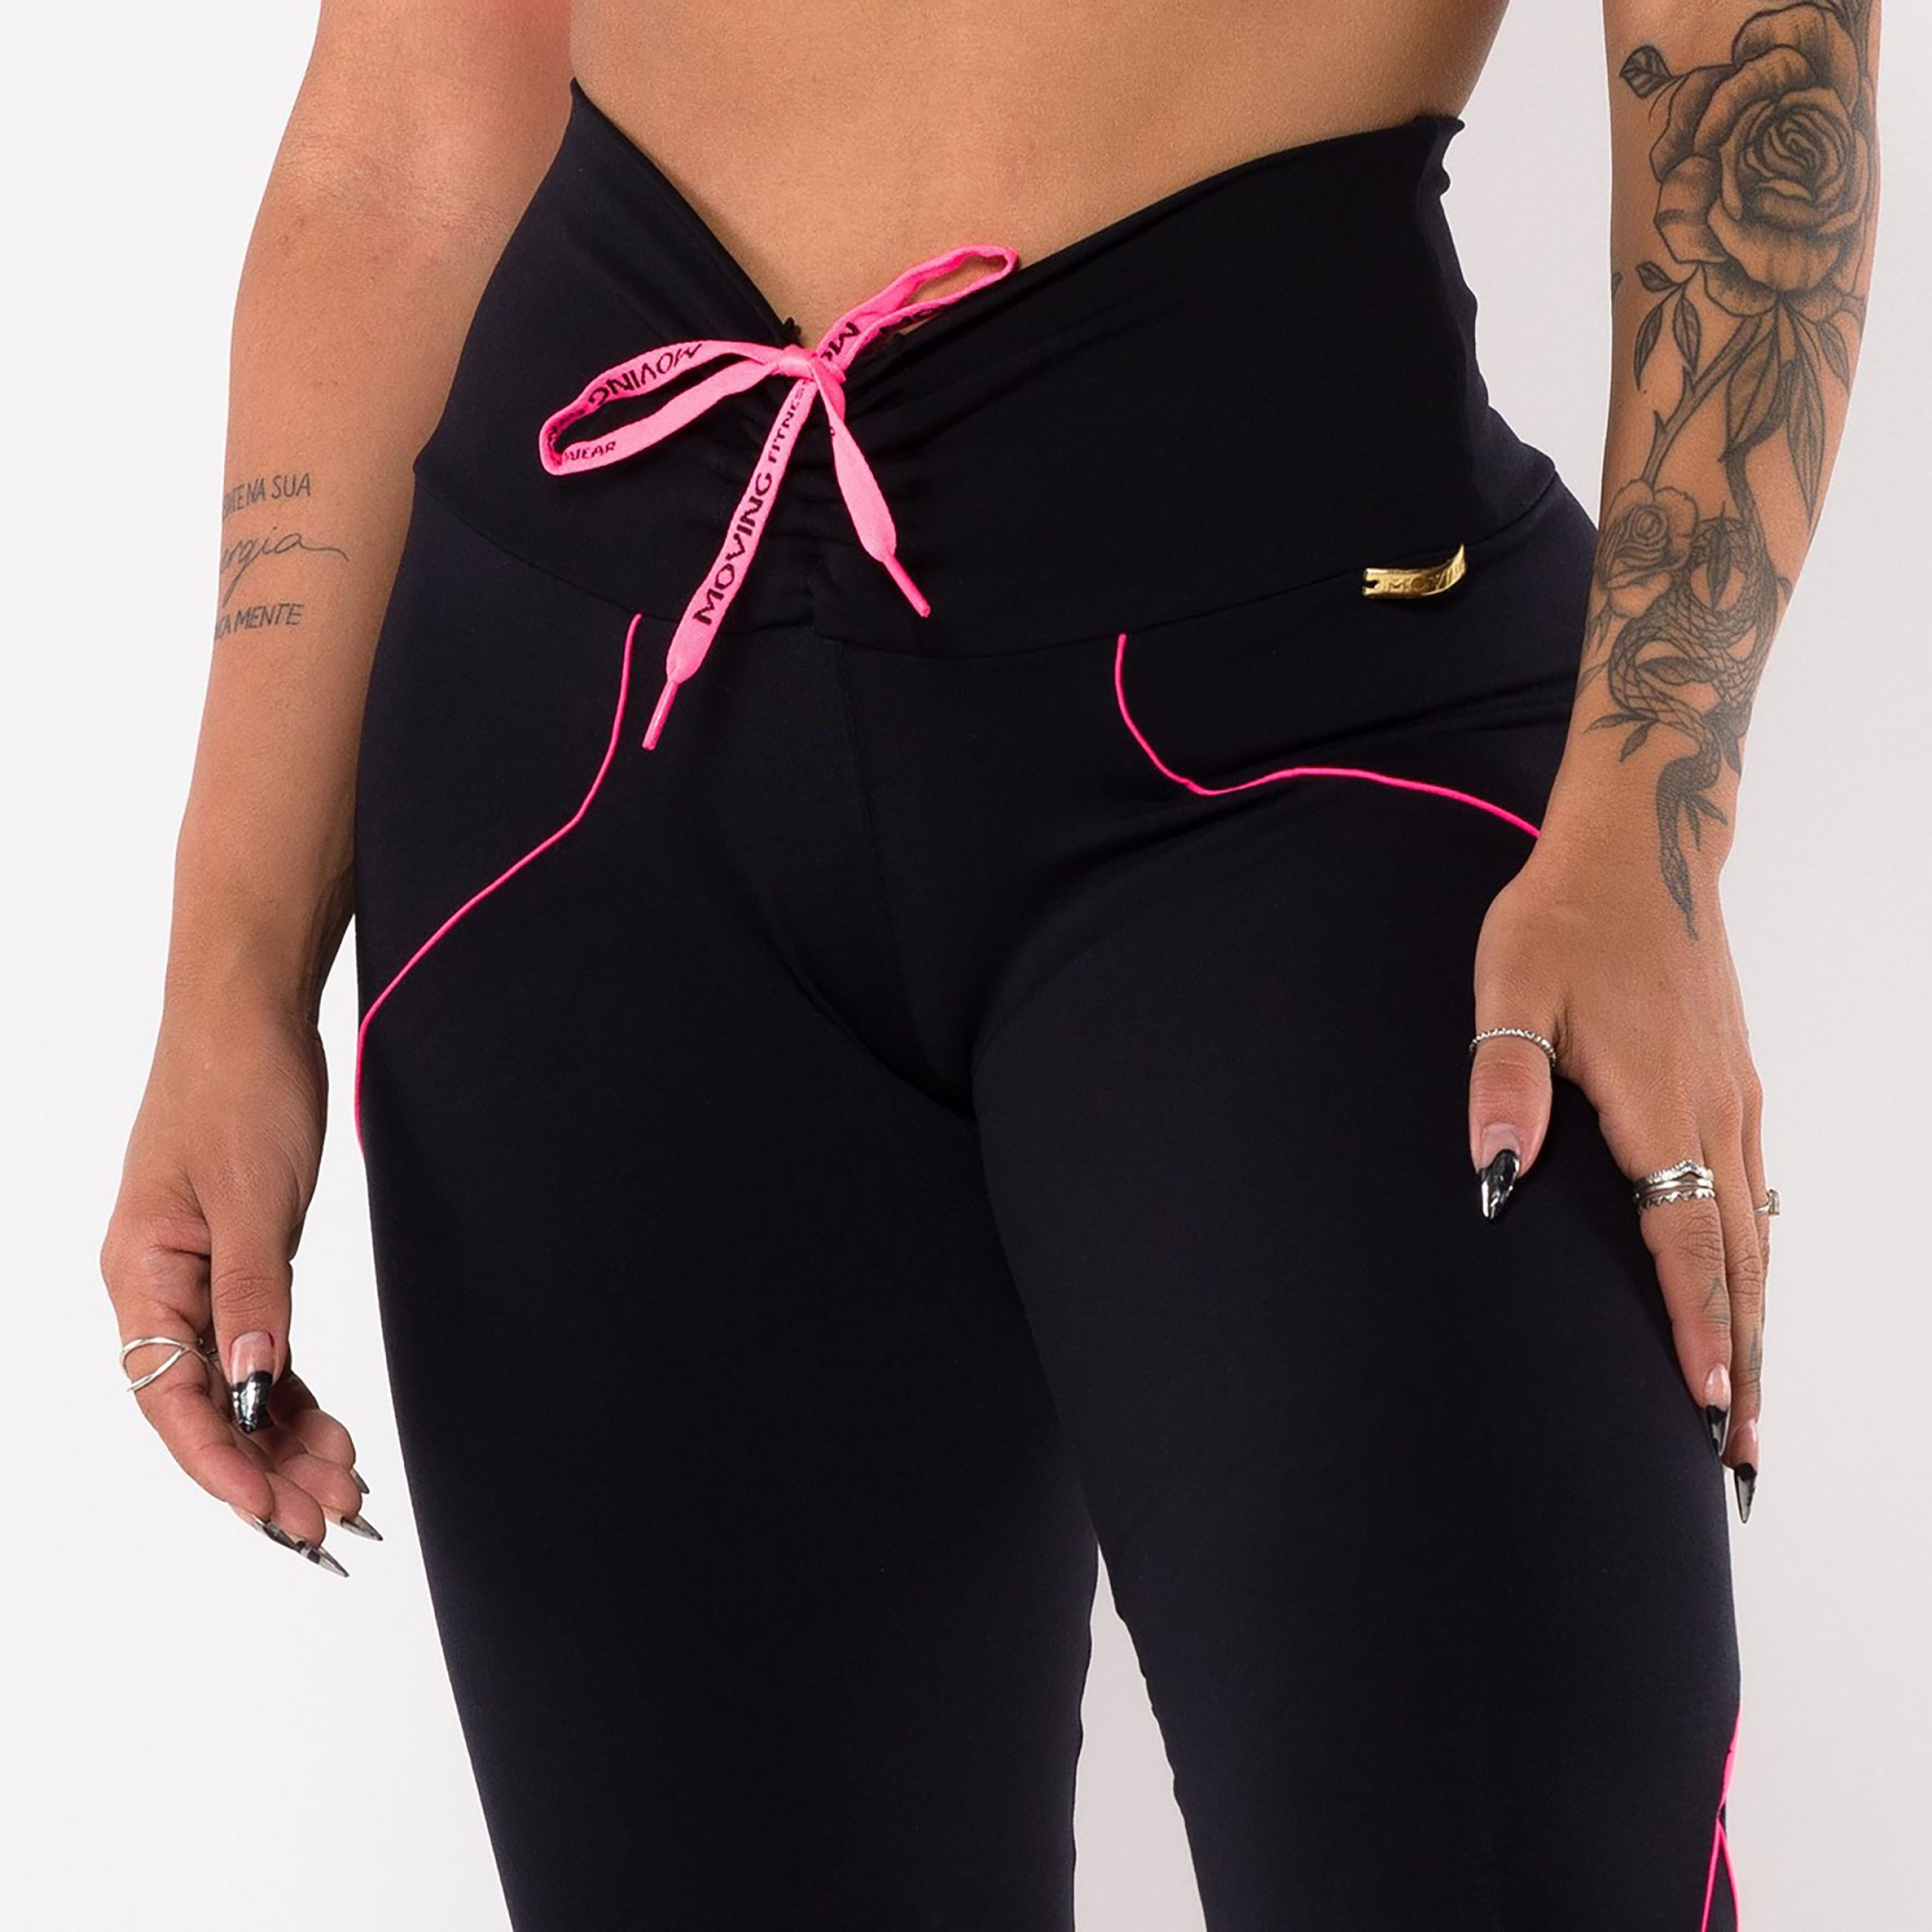 Legging Linear Empina Bumbum Preta com Cadarço Rosa Neon - Moving Fitness  Wear